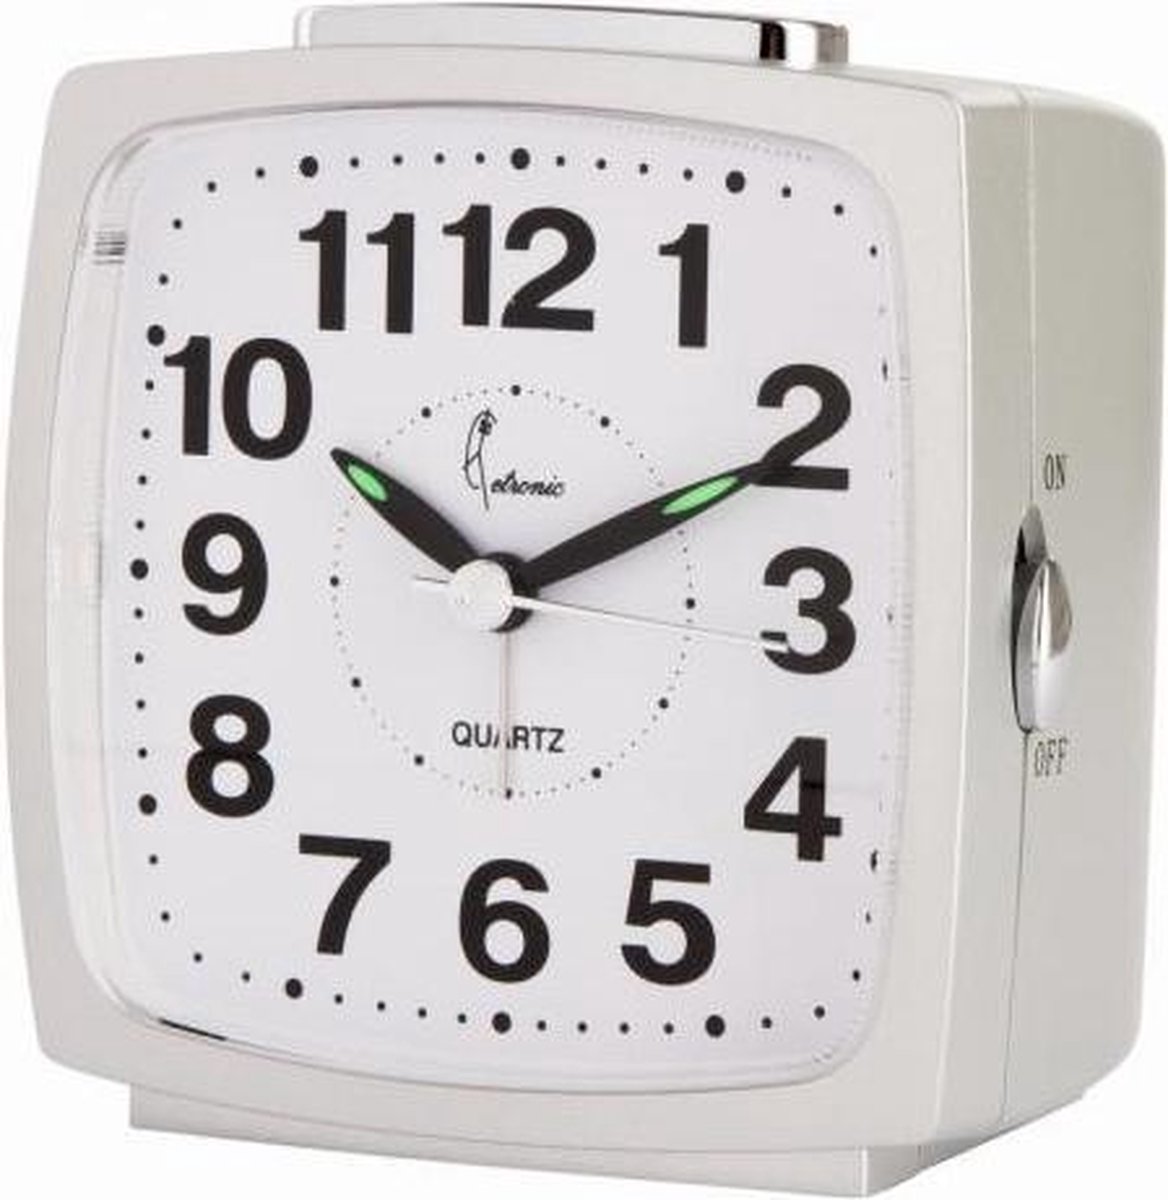 Cetronic T0310S S - Wekker - Analoog - Stil uurwerk - Snooze - Zilverkleurig